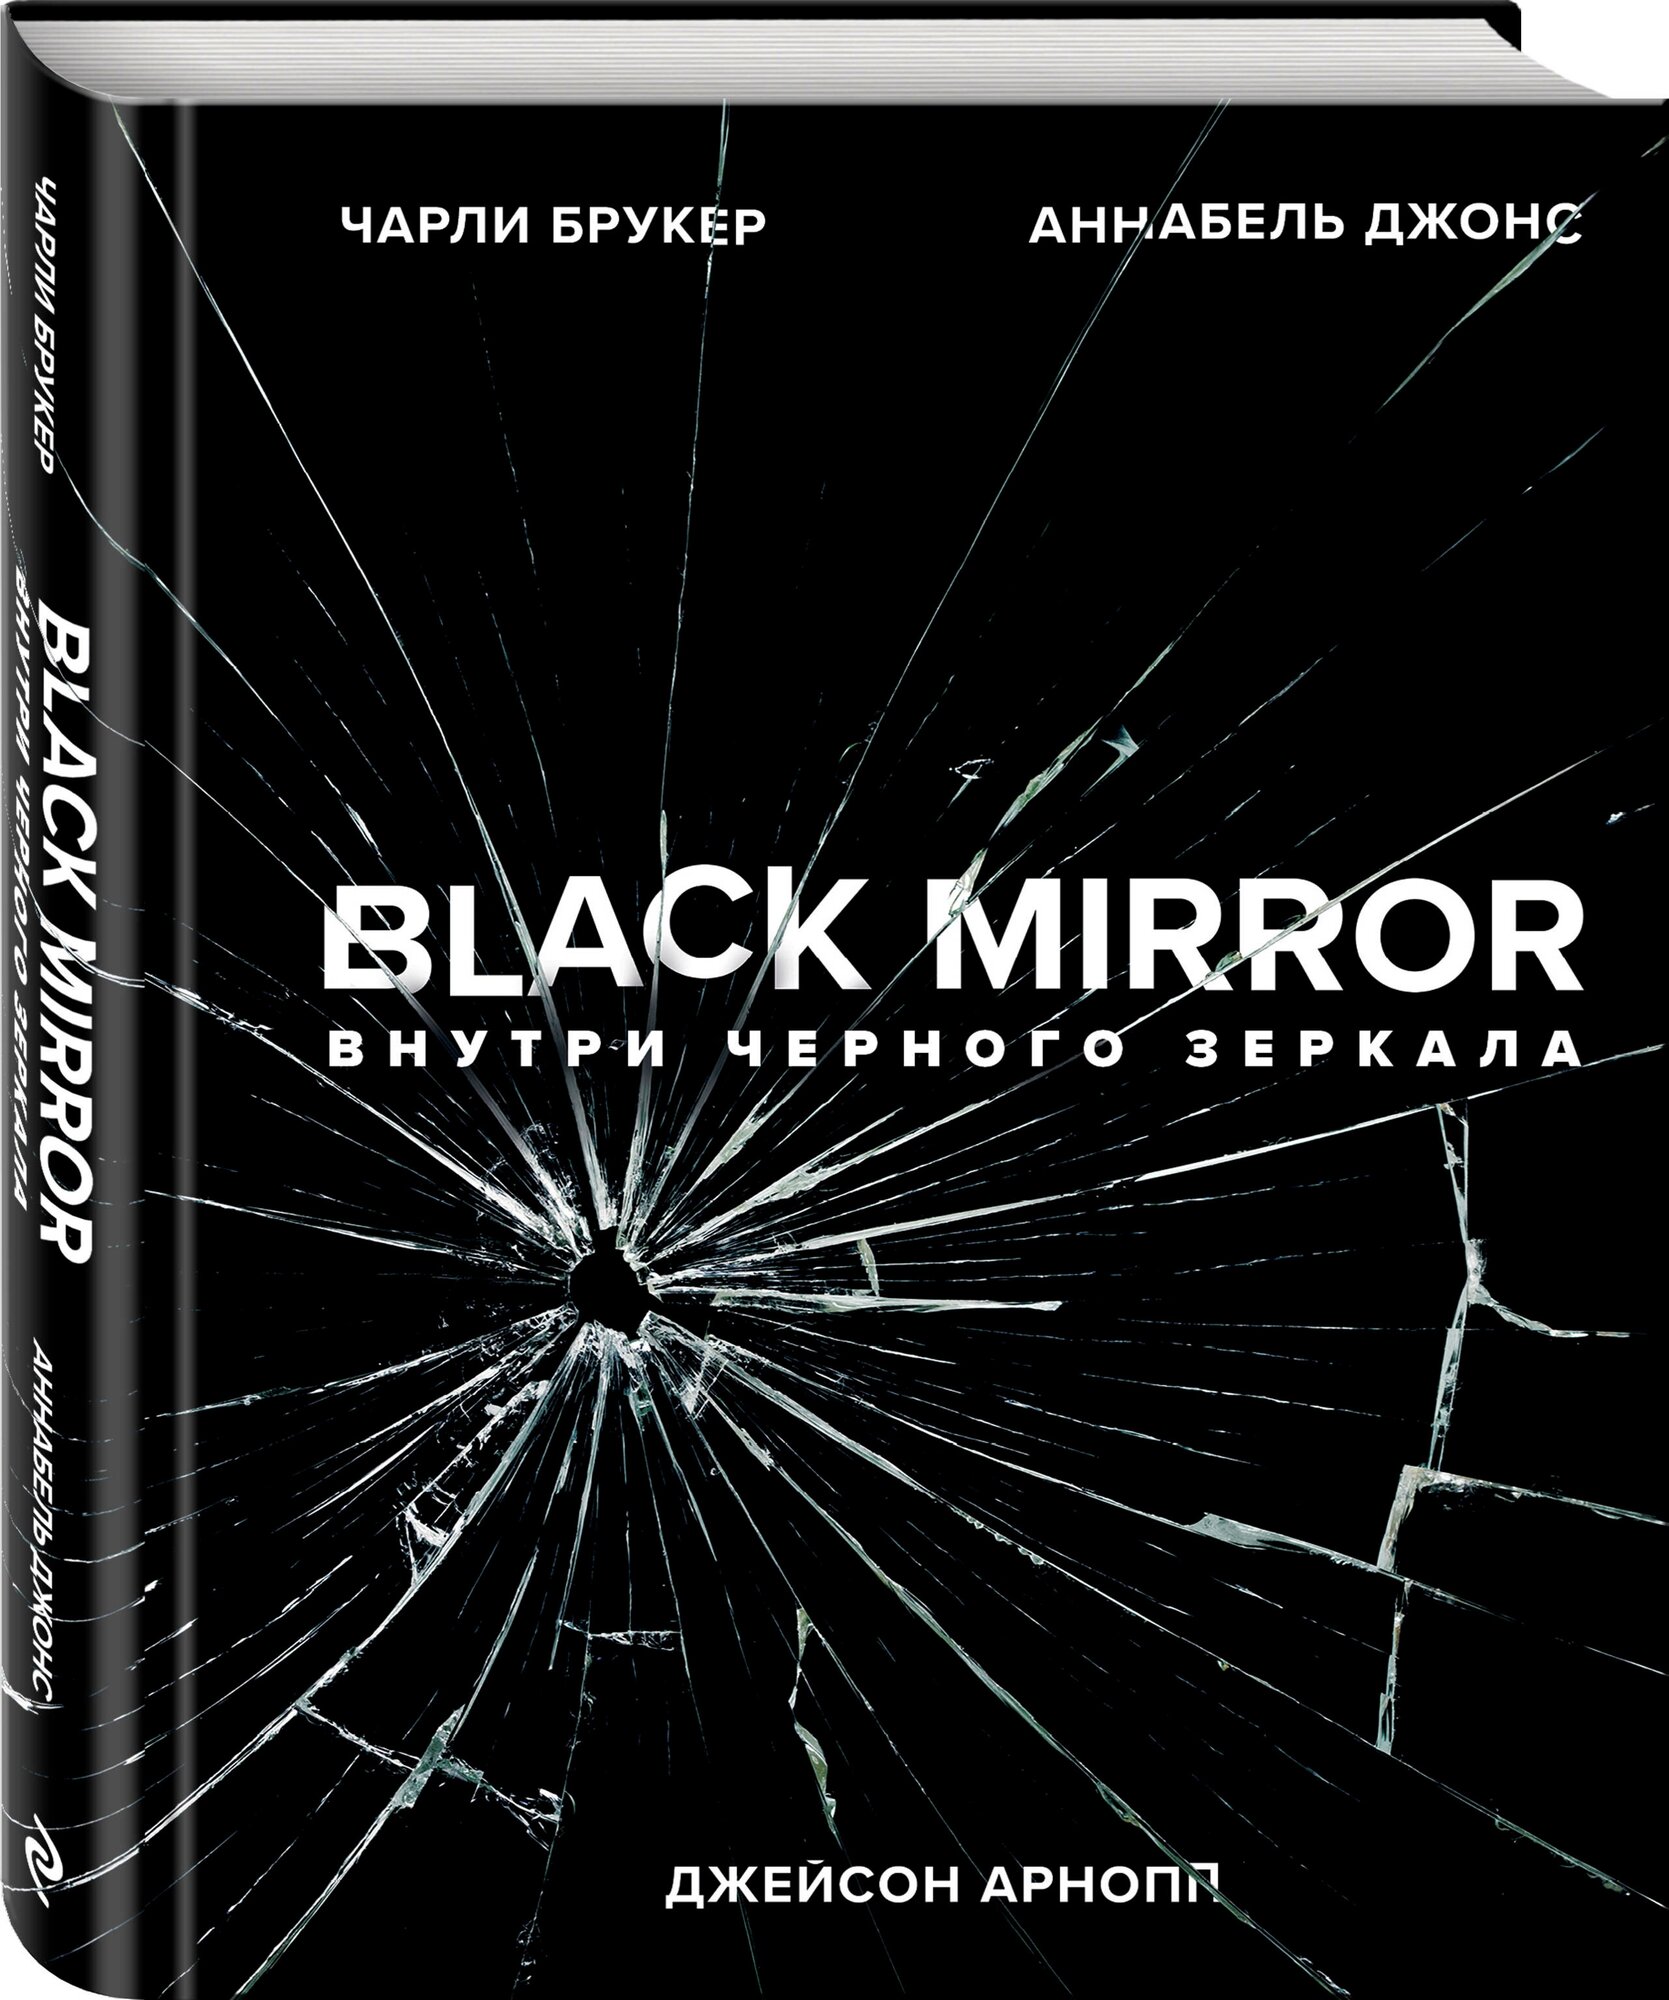 Black Mirror. Внутри Черного Зеркала - фото №1